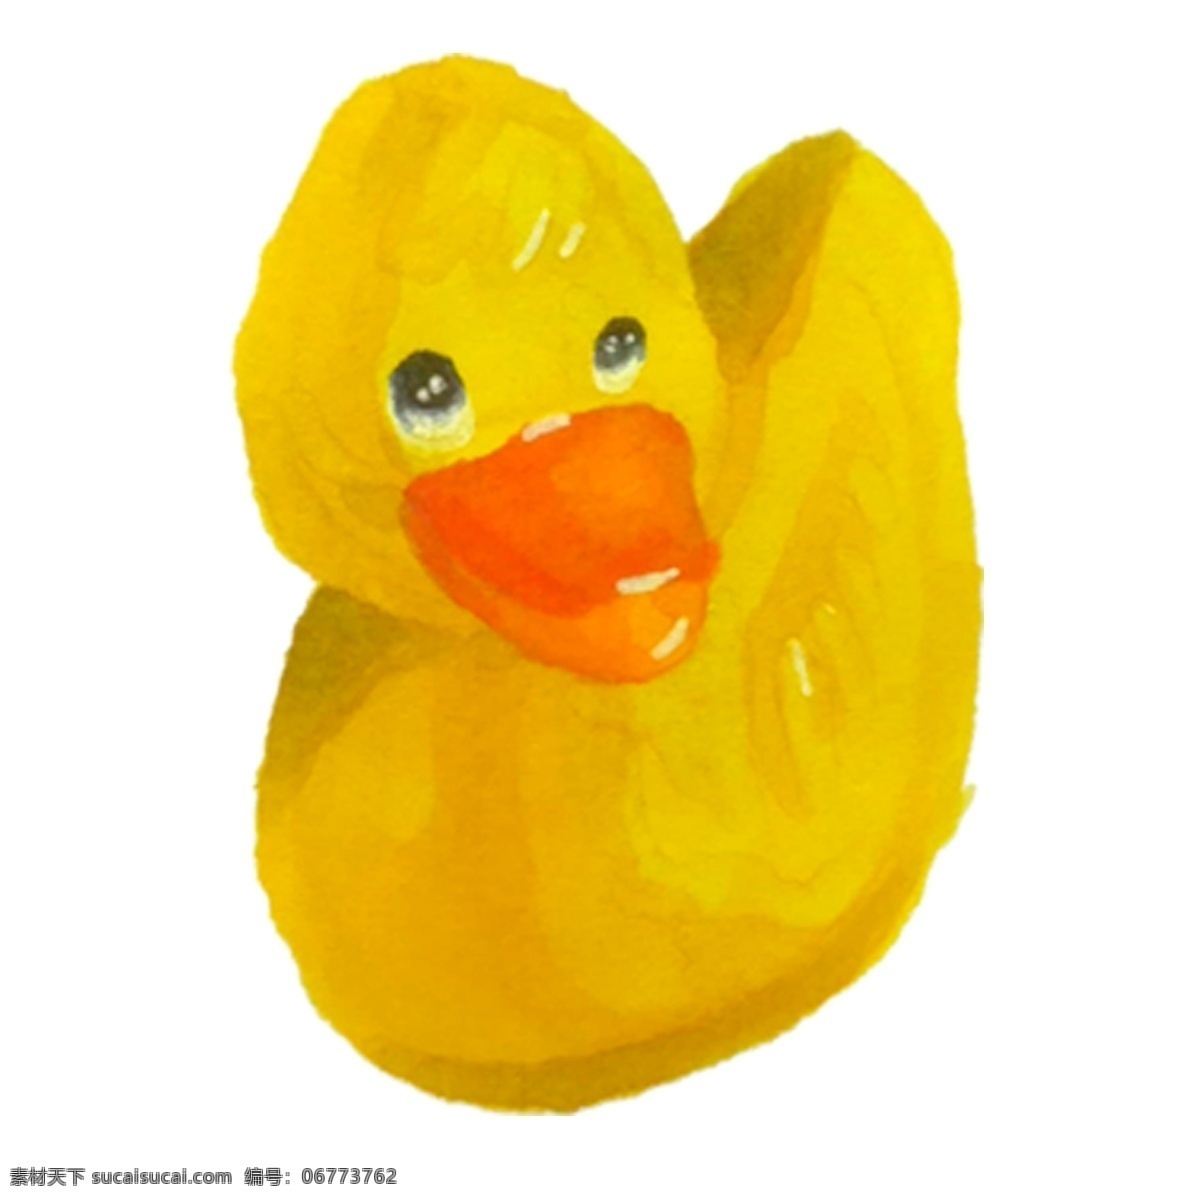 小 黄色 鸭子 免 抠 图 黄色鸭子 可爱的玩具 小朋友的最爱 卡通插画 艺术插画 黄色的玩具